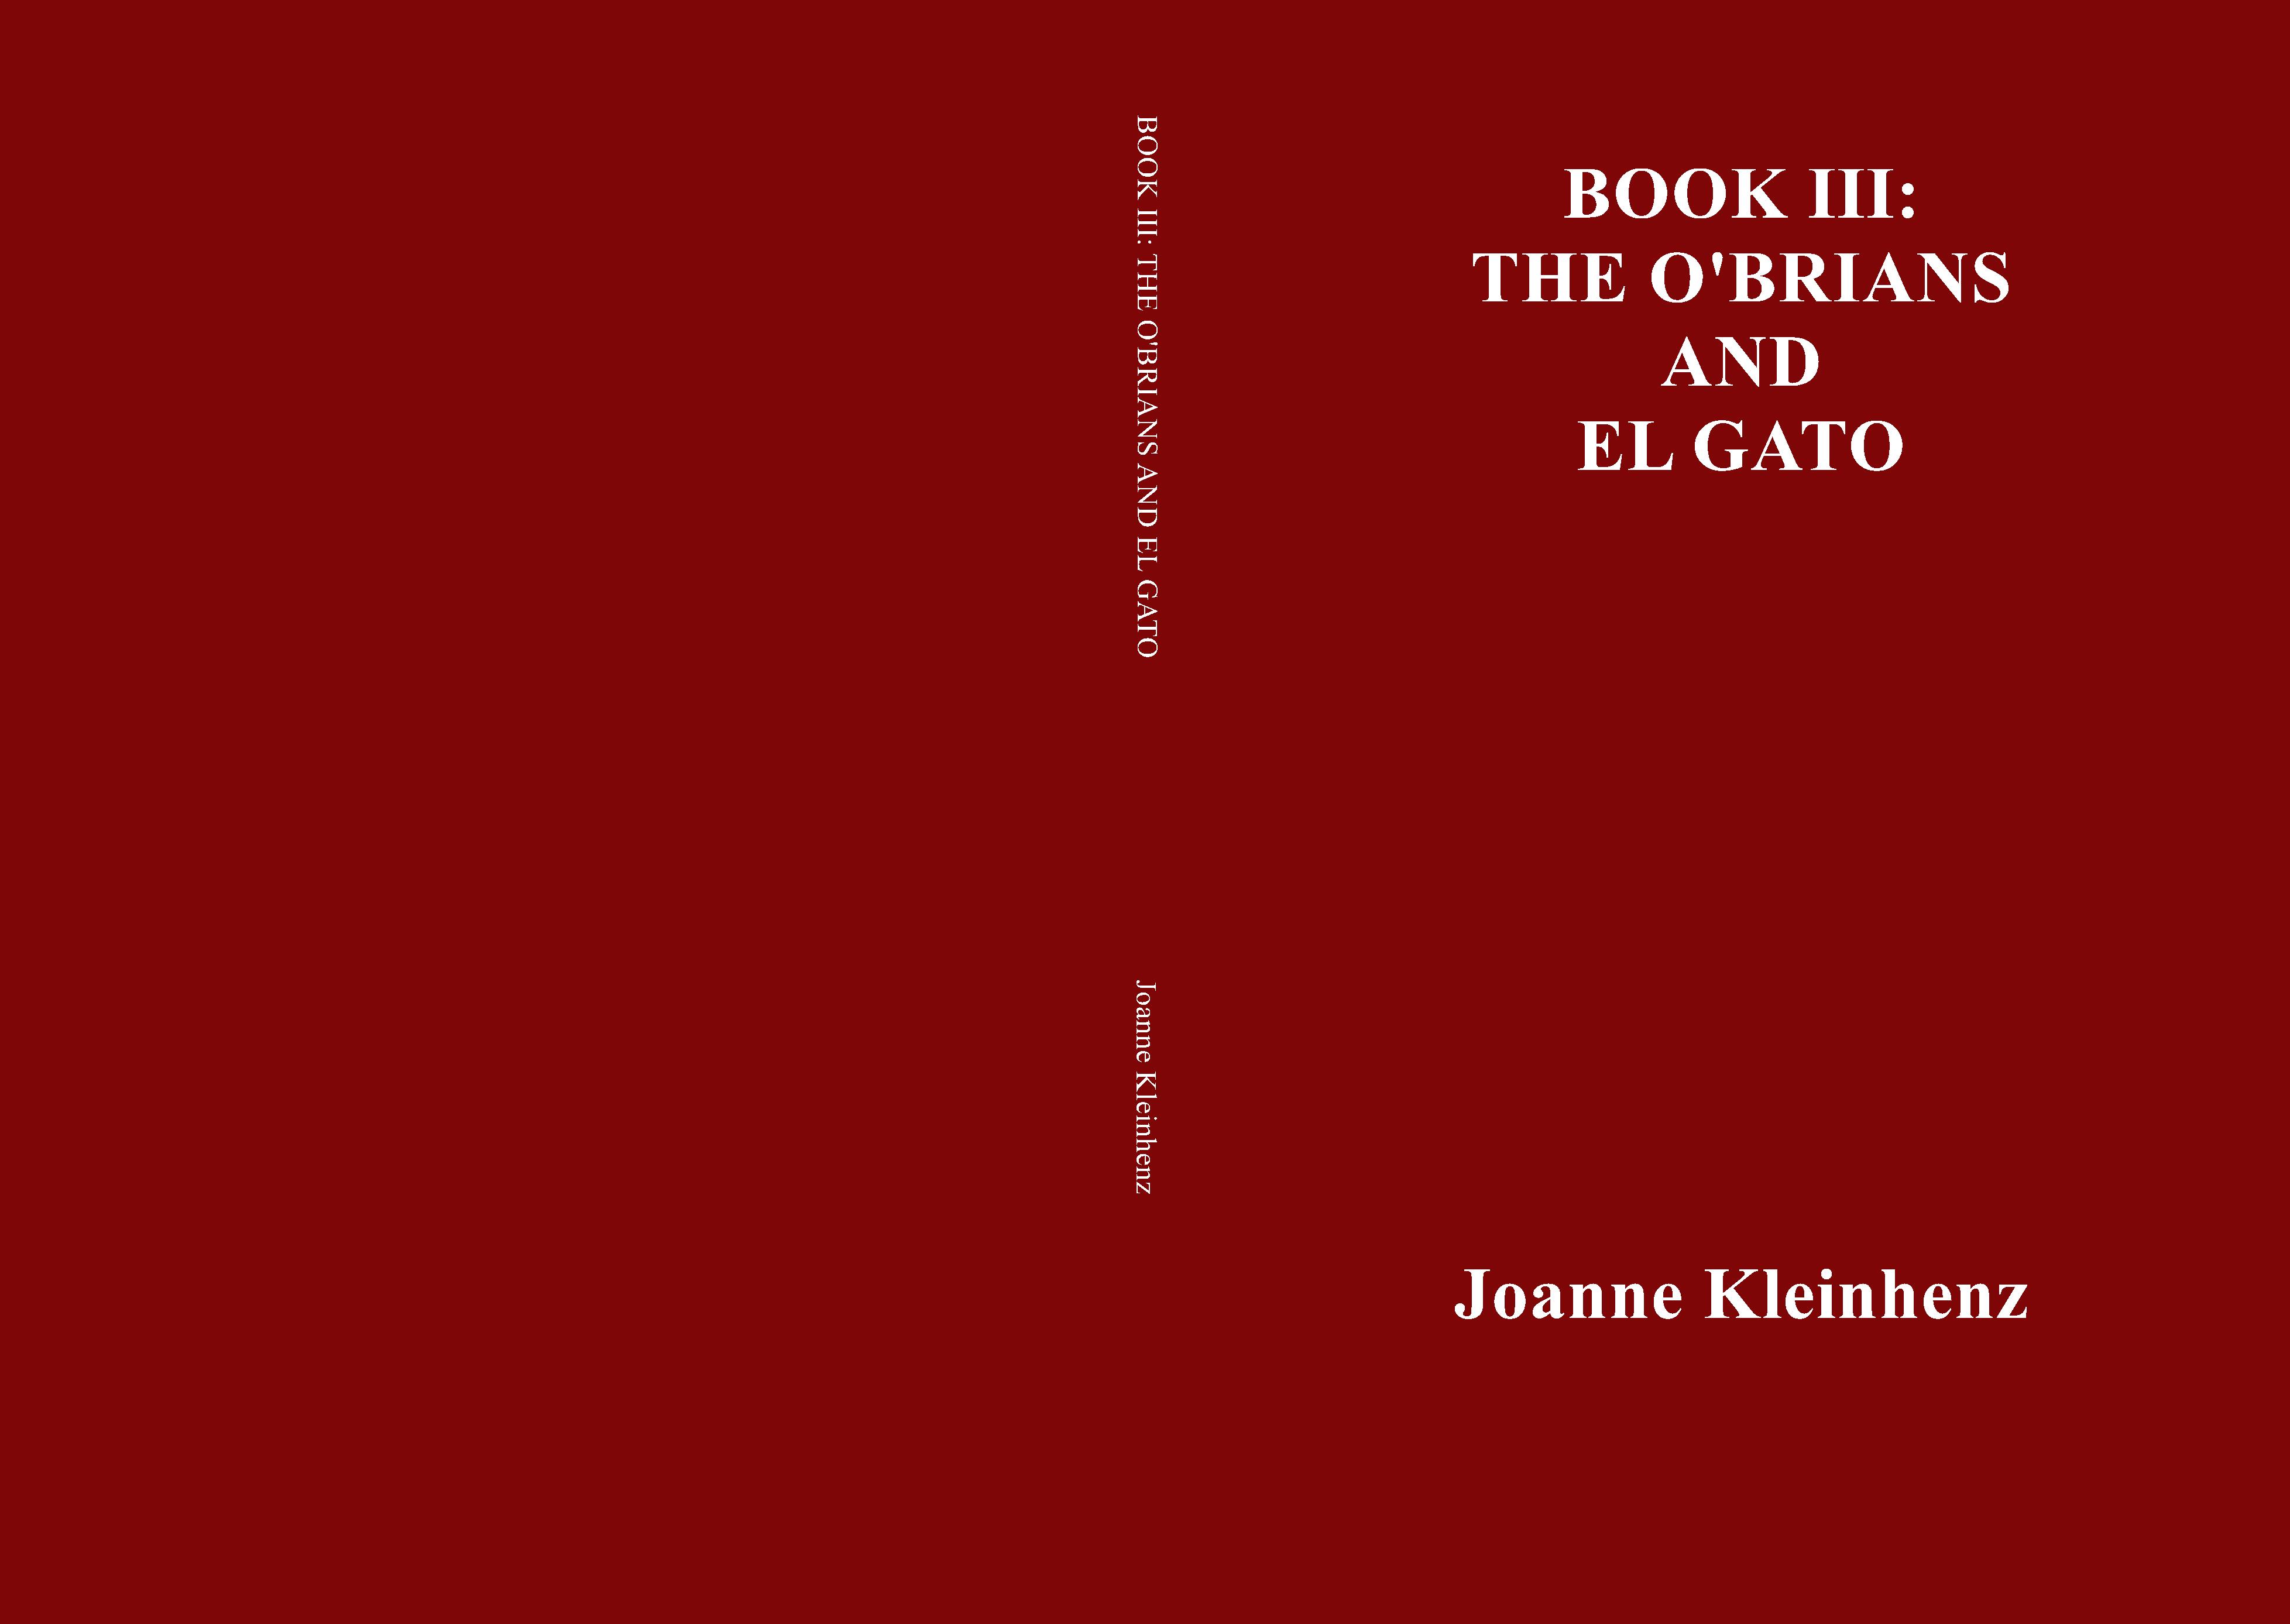 BOOK III: THE O